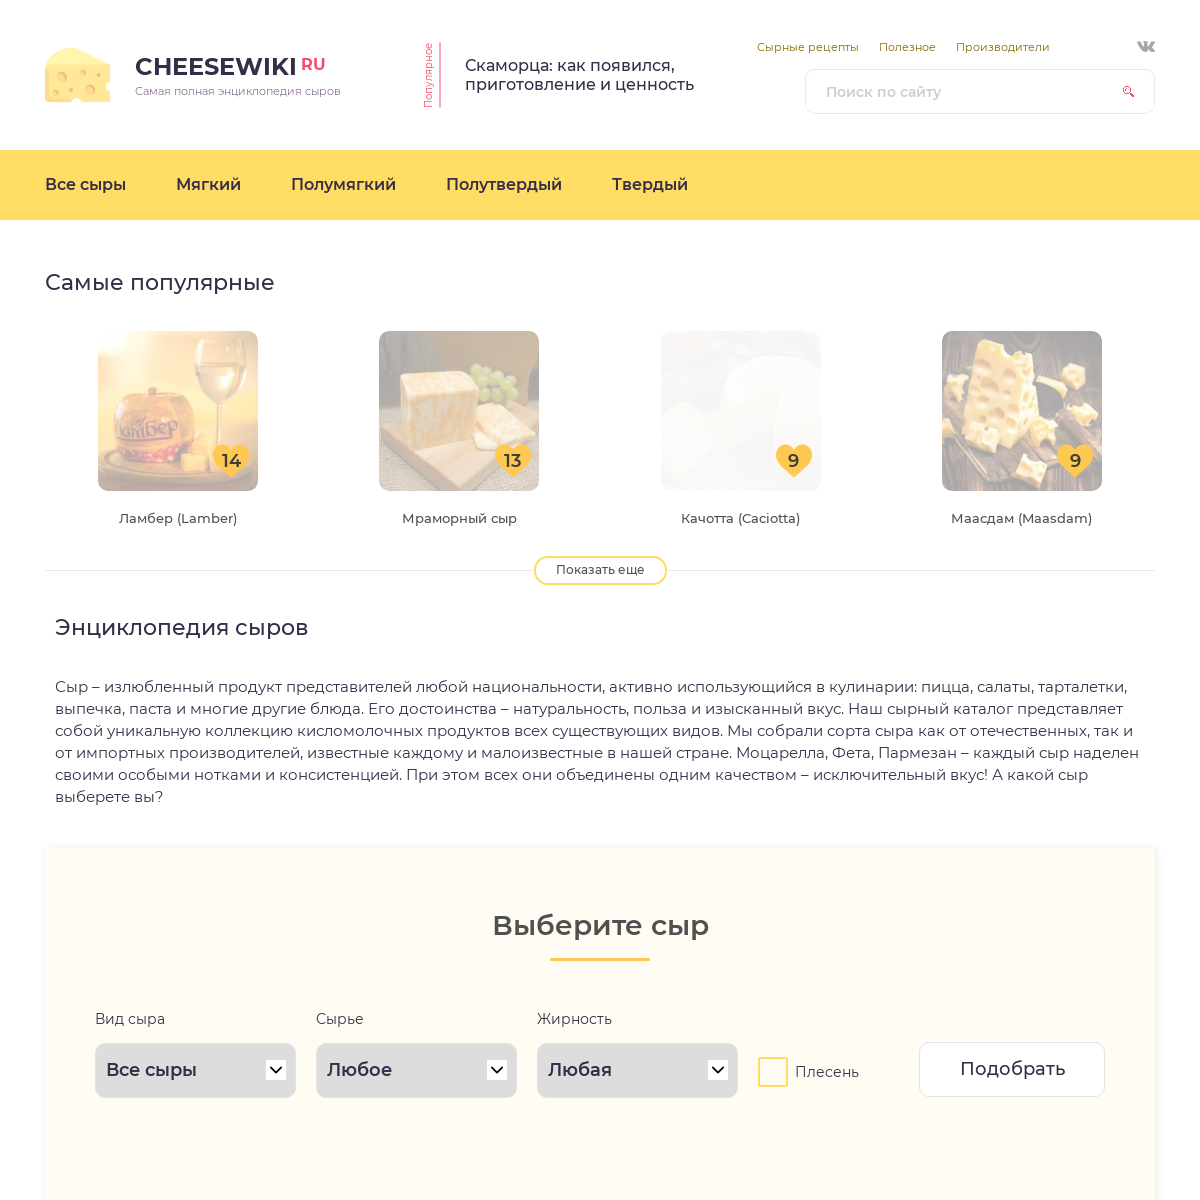 A complete backup of cheesewiki.ru